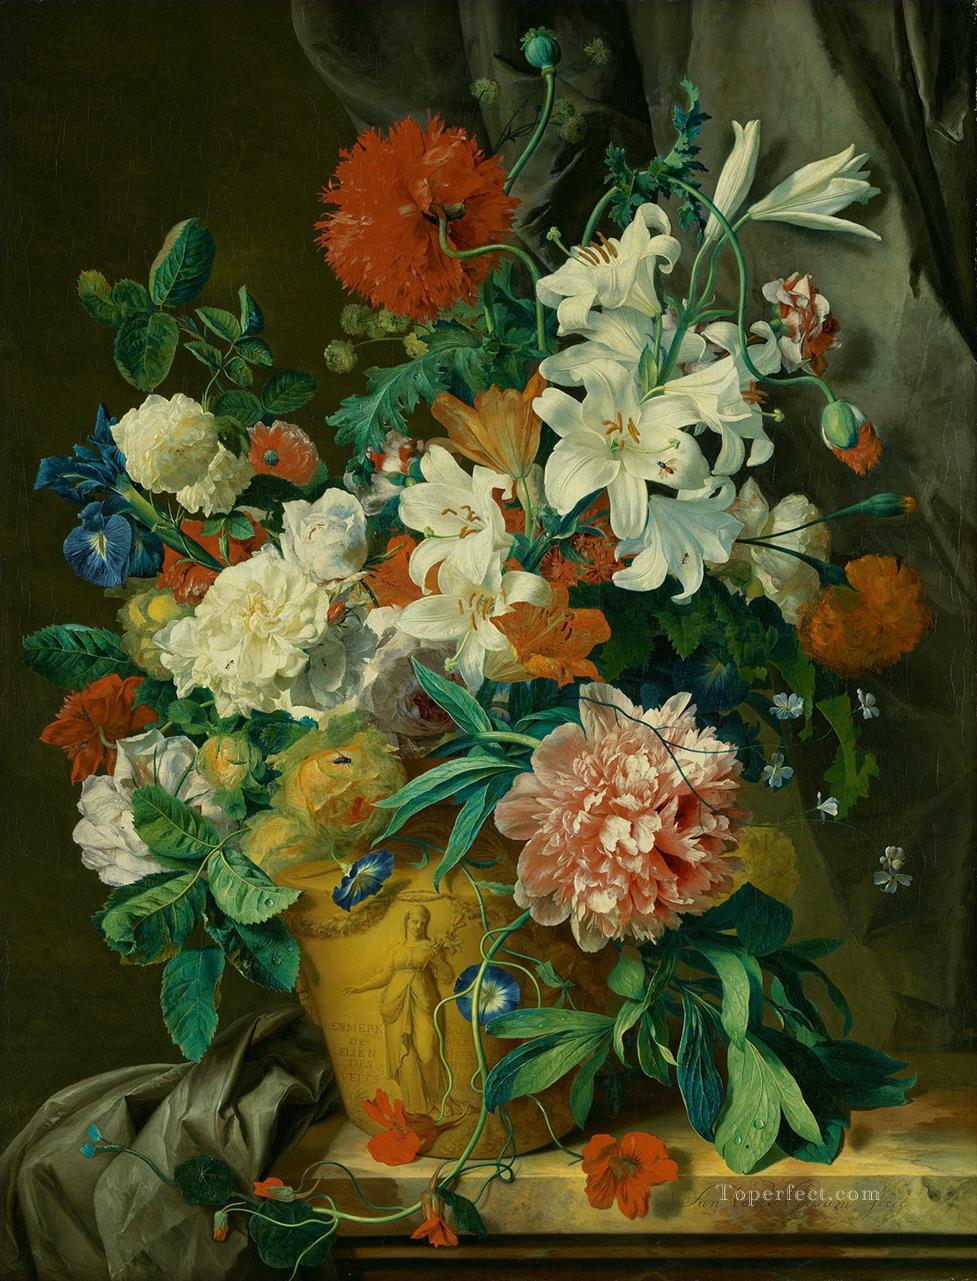 Stilleven は ポット Jan van Huysum の古典的な花の中でブルーメンの花に出会った油絵